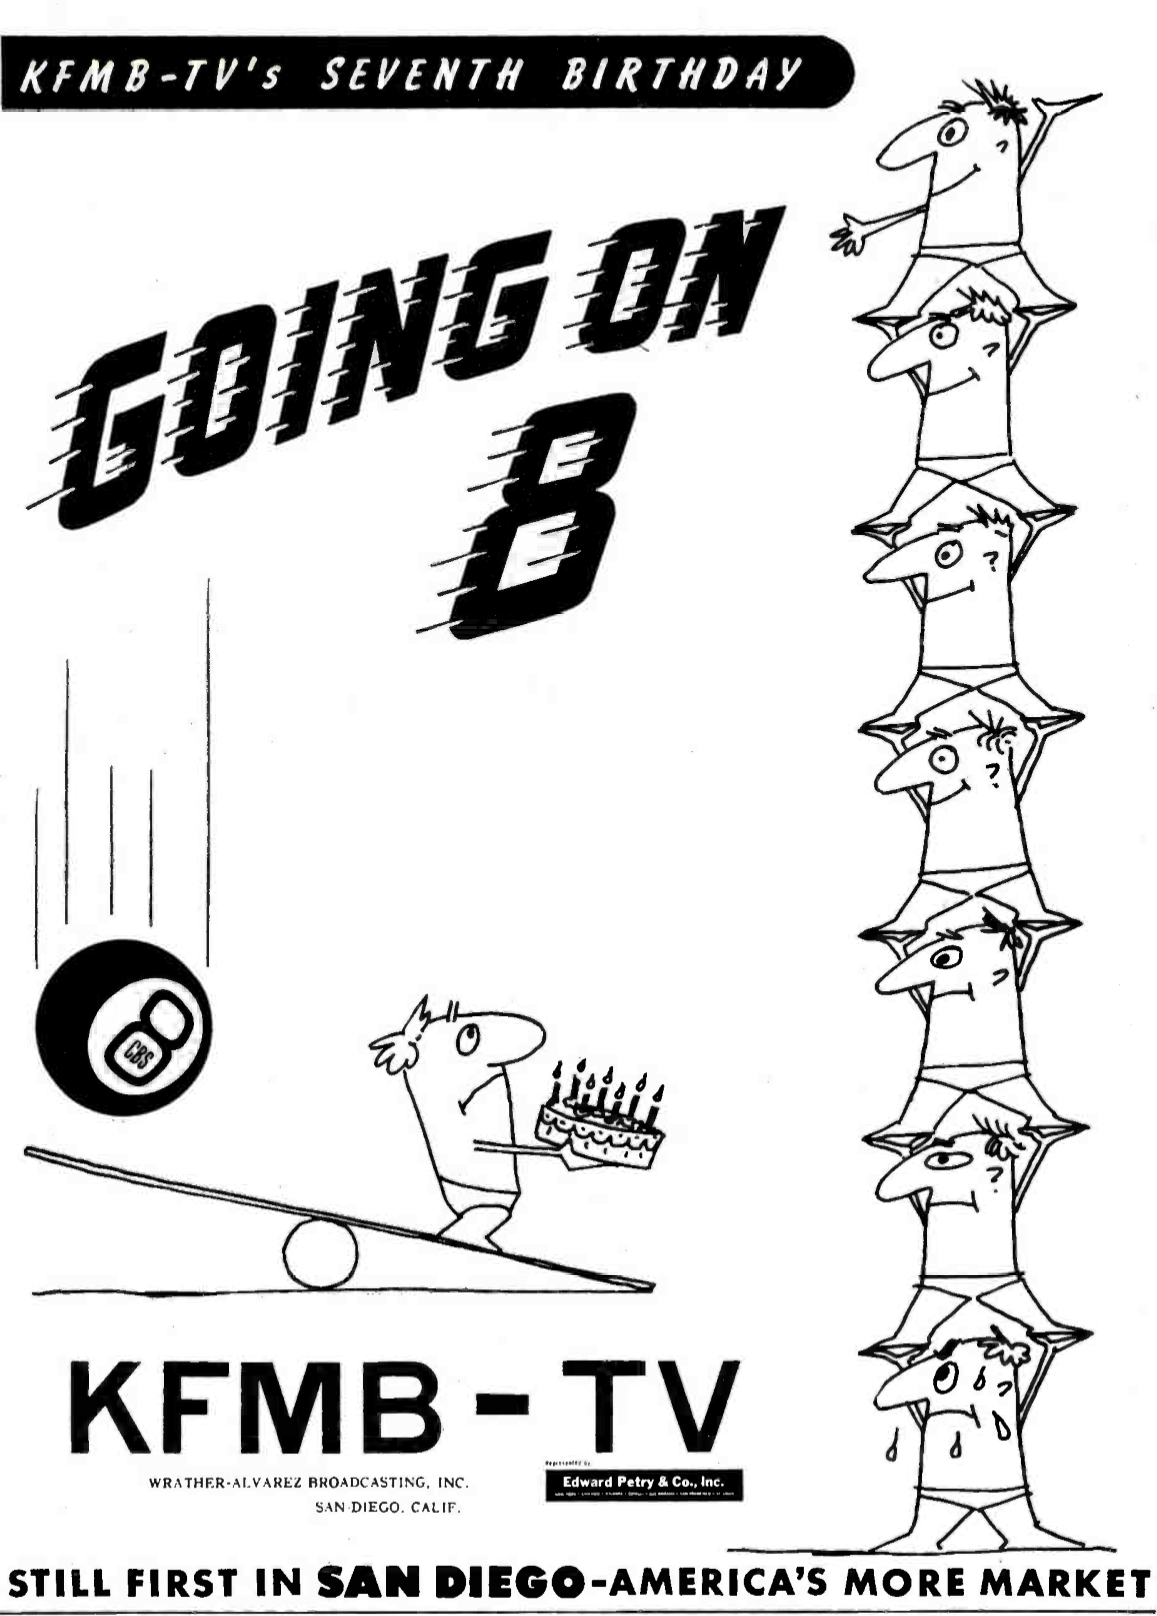 KFMB-TV - San Diego, California U.S.A. - 1956